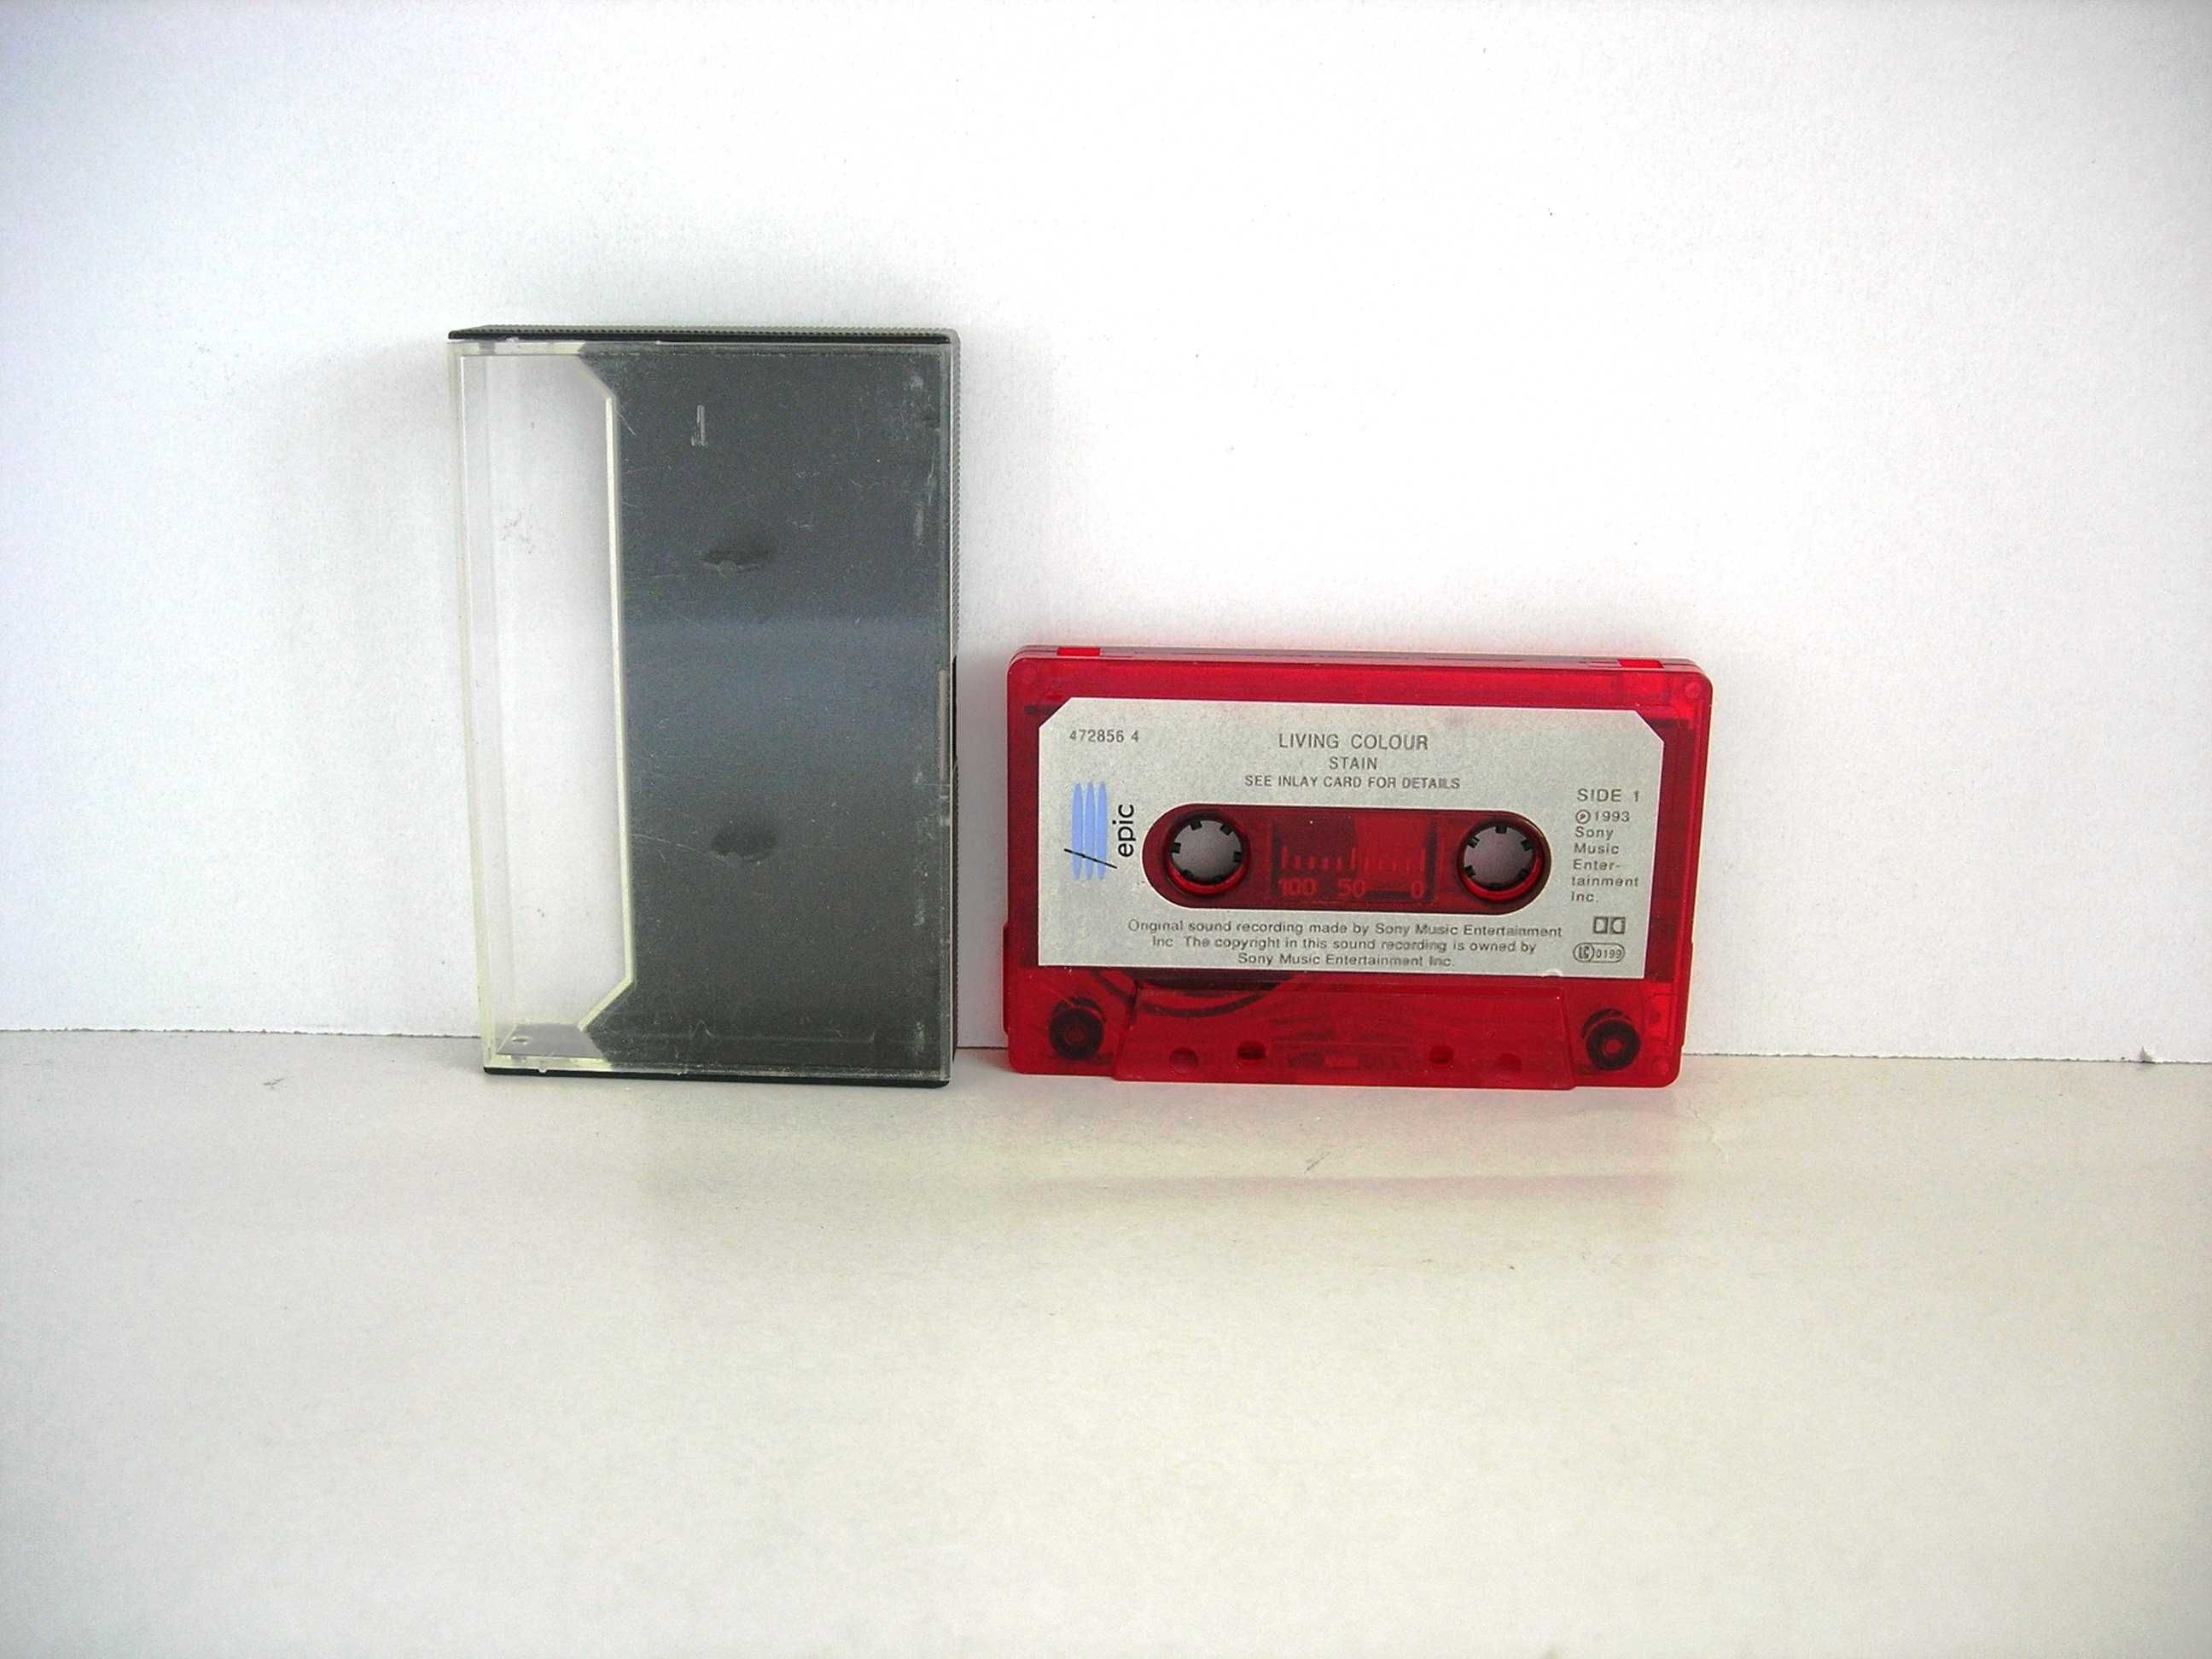 Living Colour "Stain" kaseta magnetofonowa Epic 1993